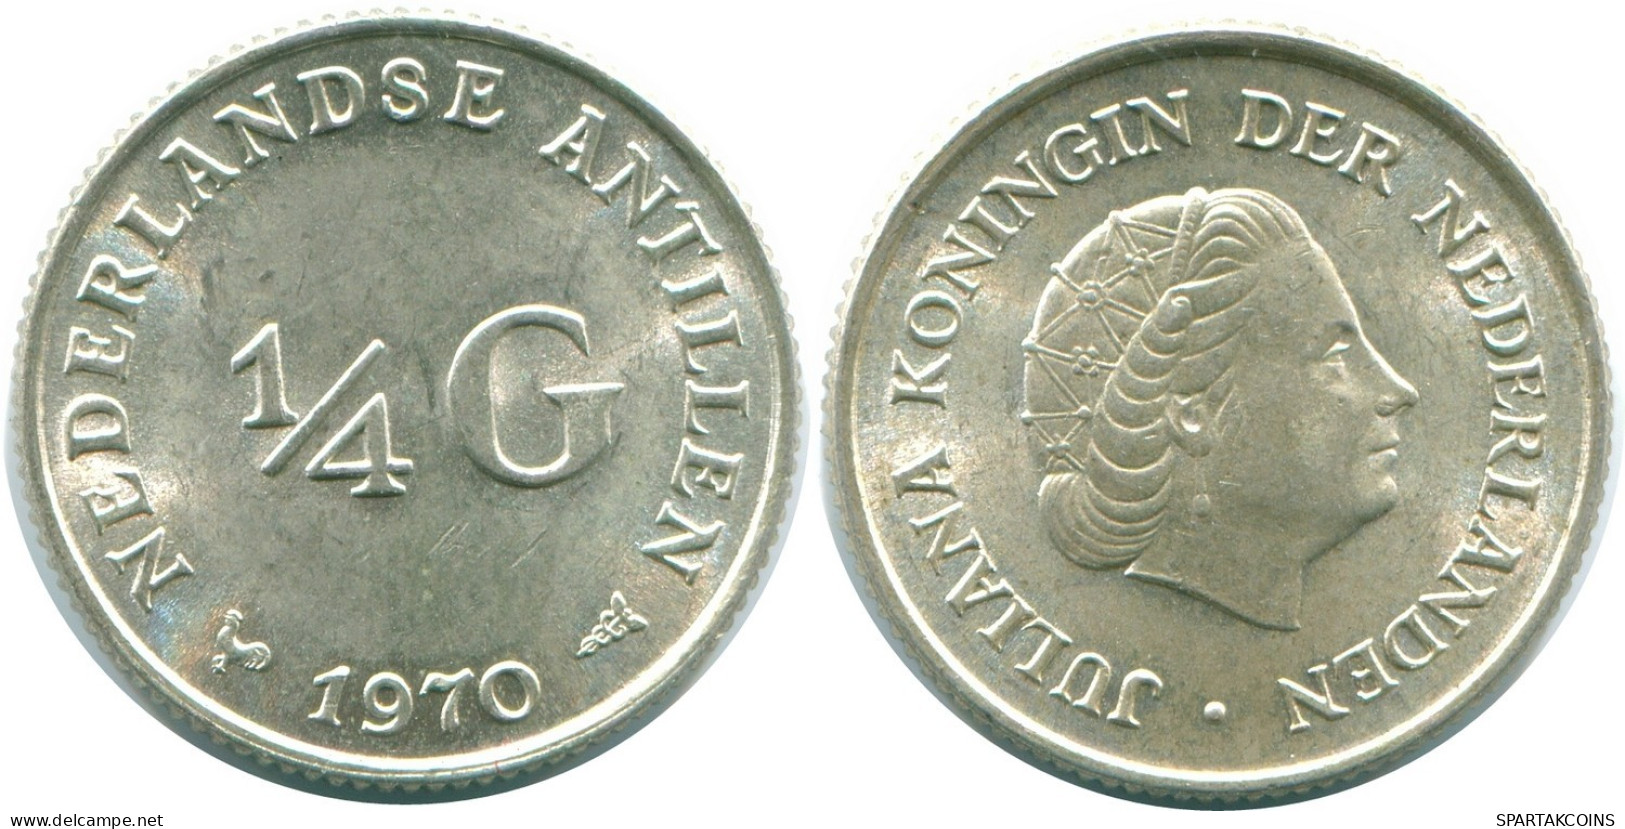 1/4 GULDEN 1970 NIEDERLÄNDISCHE ANTILLEN SILBER Koloniale Münze #NL11645.4.D.A - Niederländische Antillen